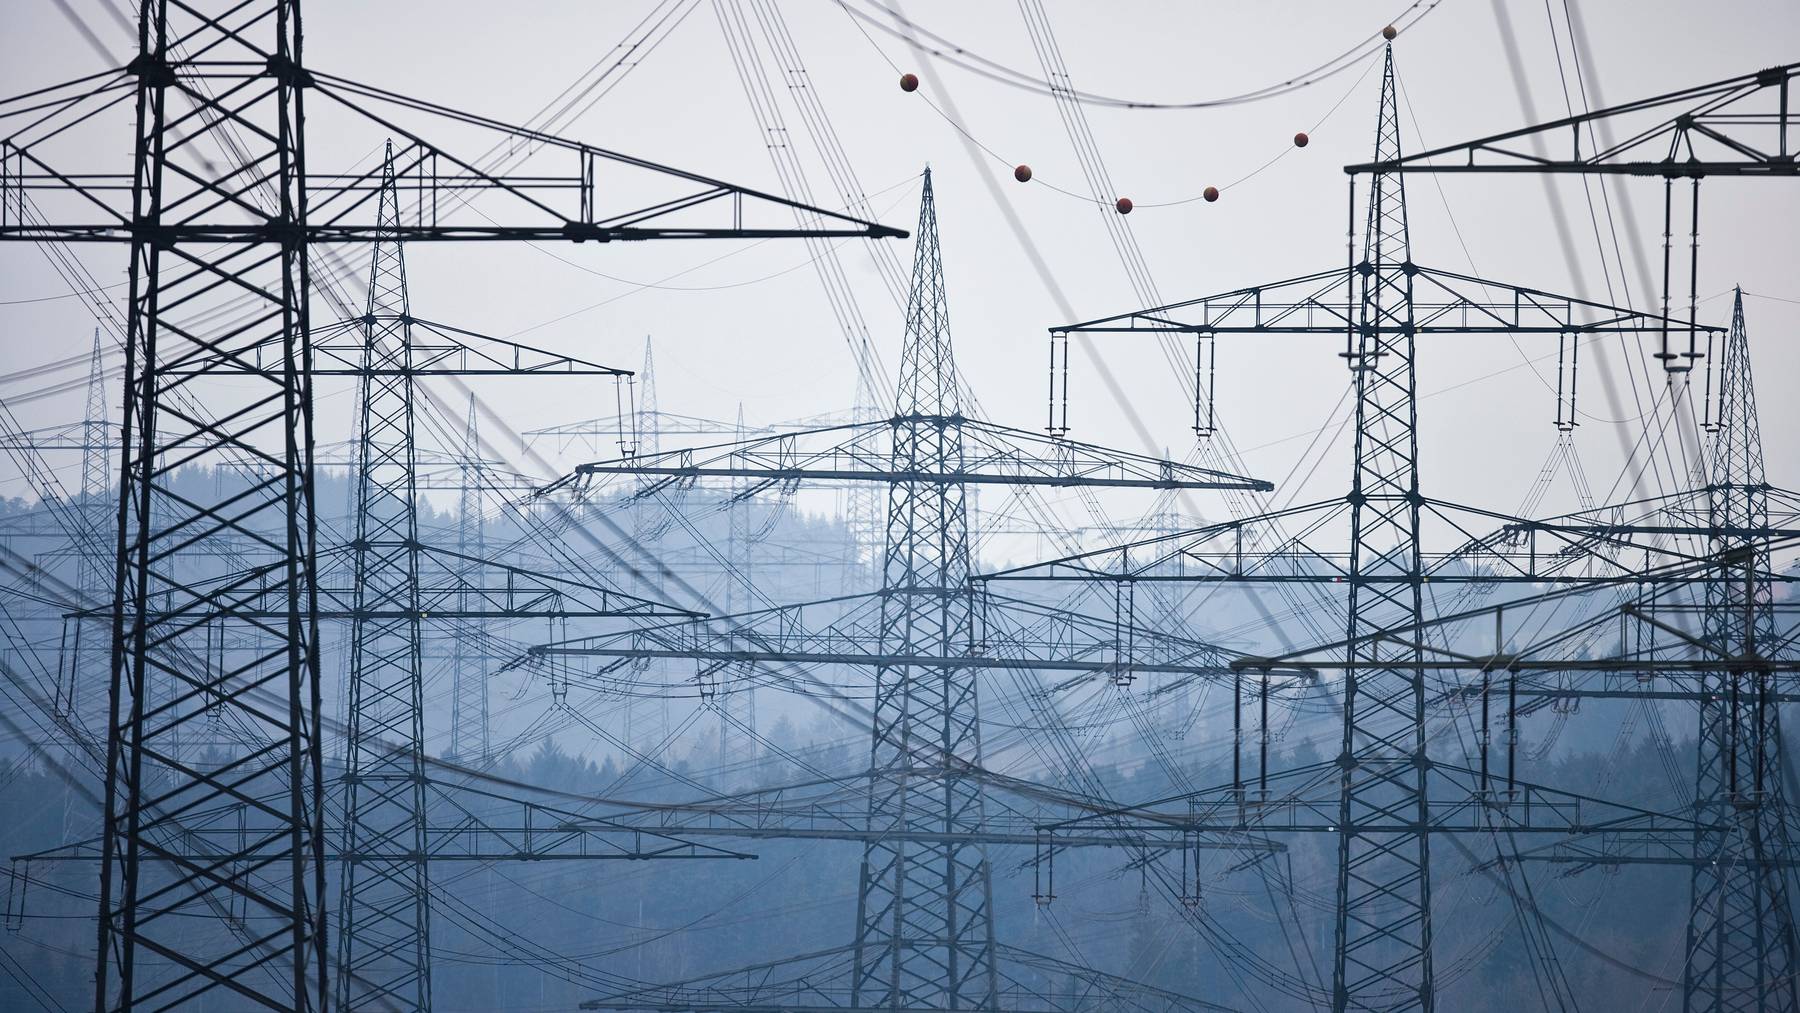 Für die Aufrechterhaltung der Stromproduktion im Winter müssten im Inland entsprechende Anreize geschaffen werden, fordert die Elektrizitätskommission. (Symbolbild)